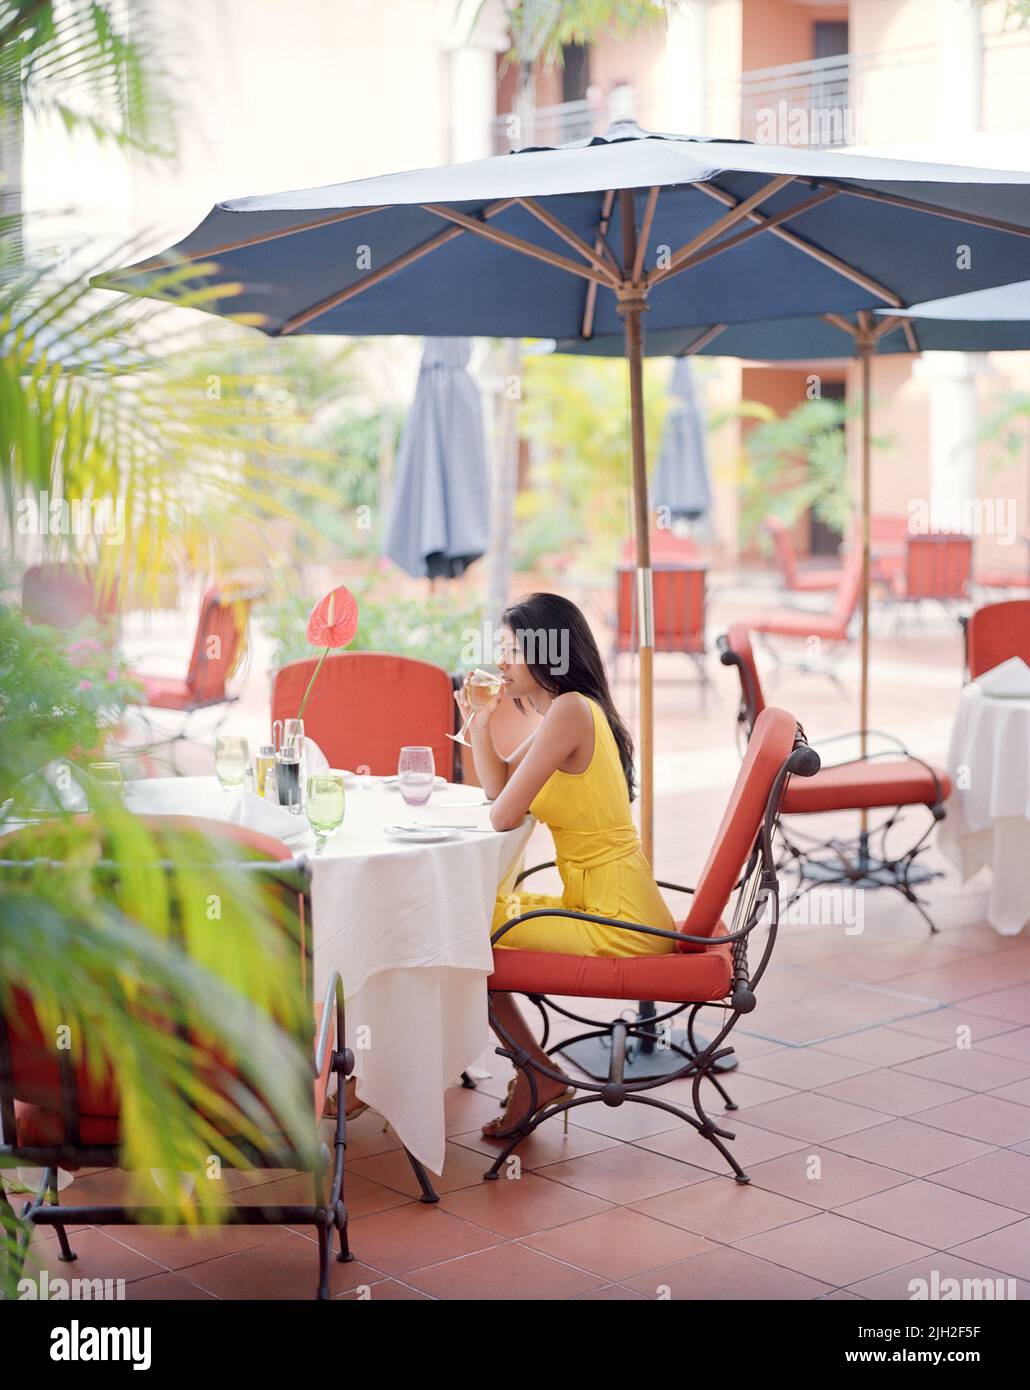 Una mujer vestida con un vestido de Diane von Furstenberg toma una copa de vino en un restaurante. Santo Domingo, República Dominicana. Foto de stock